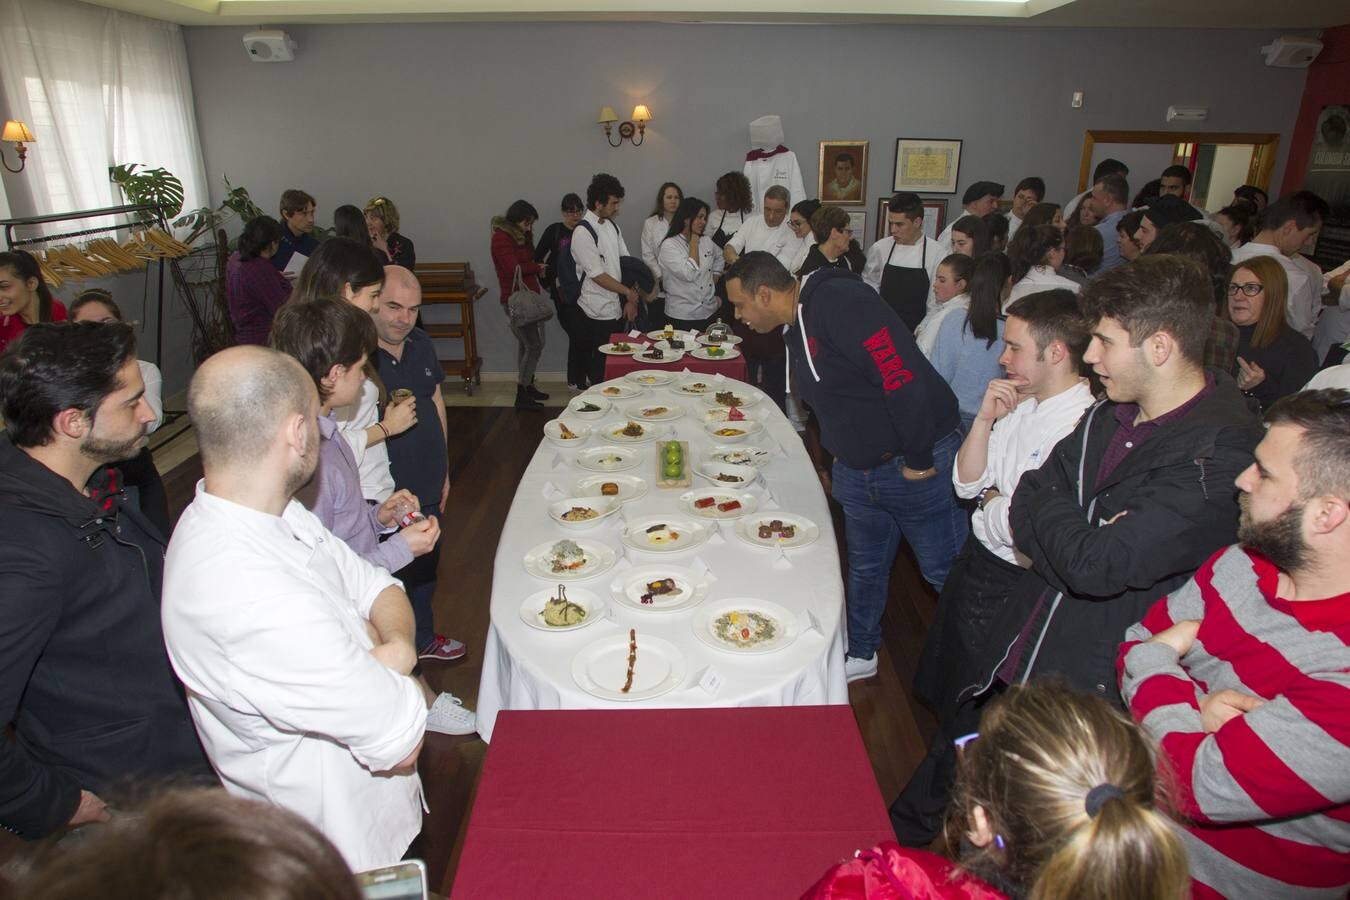 Las mejores imágenes del evento que organiza El Diario Montañés para premiar a los mejores estudiantes de cocina de Cantabria.